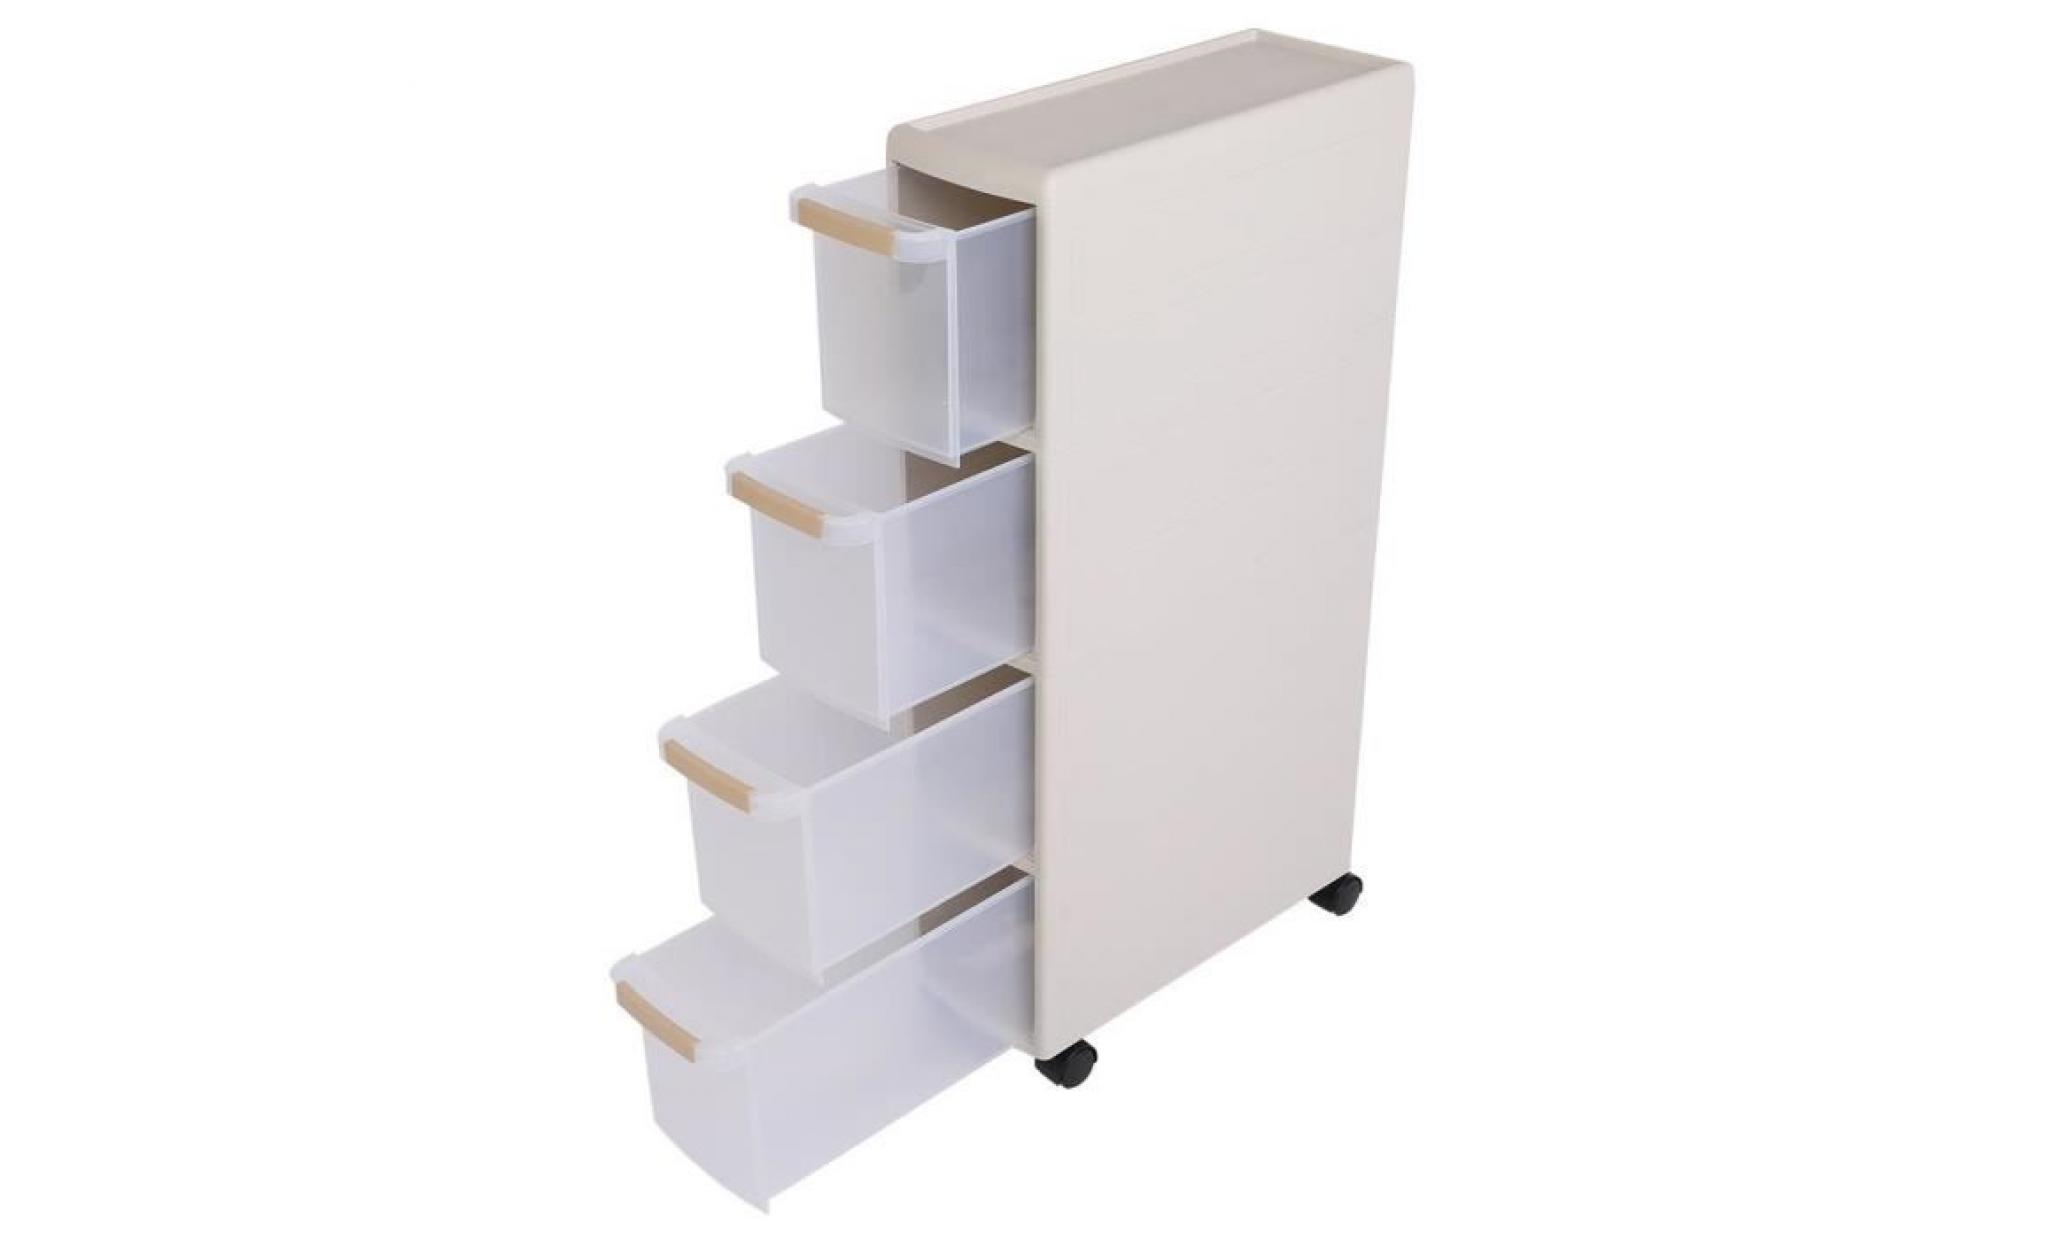 caisson de bureau à roulettes caisson à tiroir caisson meuble rangement étagère amovible avec 4 tiroirs blanc  tam pas cher